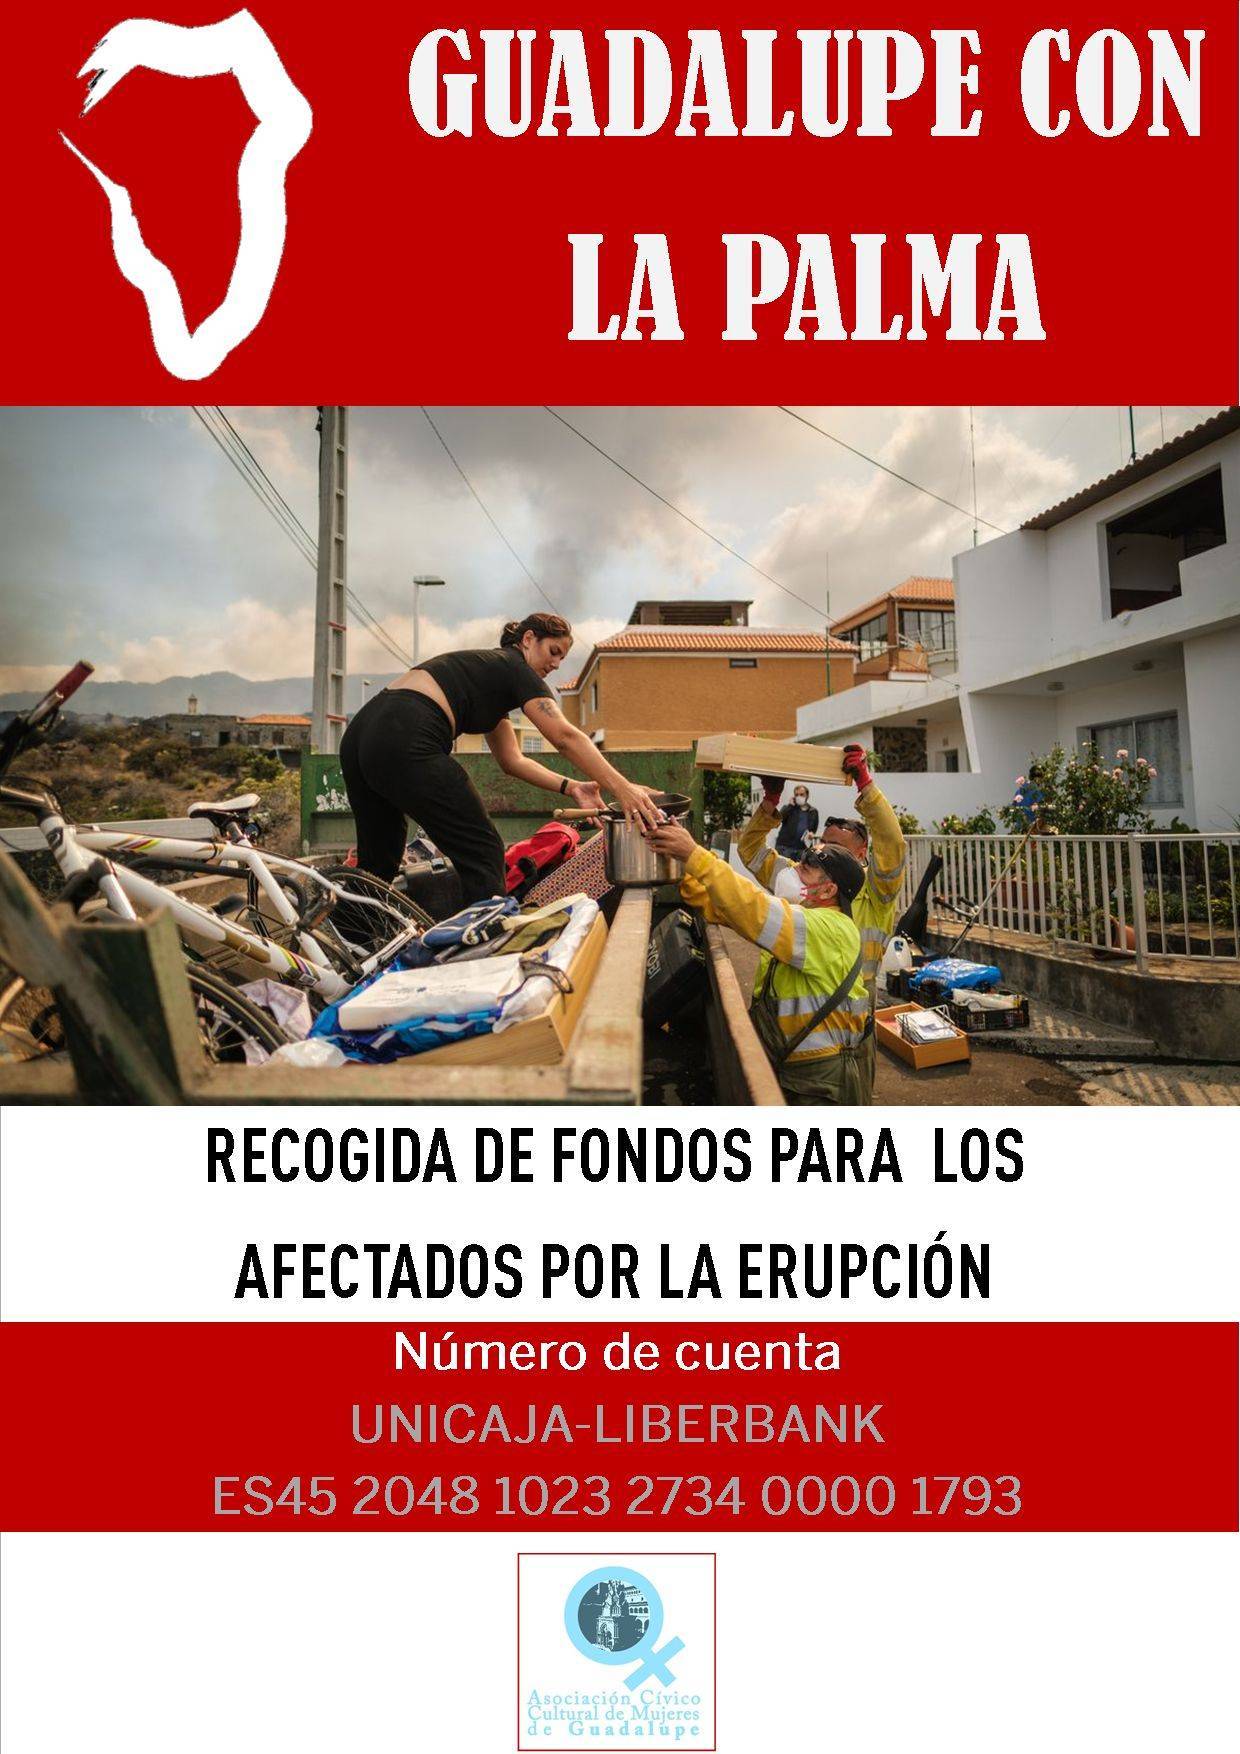 Recogida de fondos para los afectados por la erupción del volcán (2021) - Guadalupe (Cáceres)